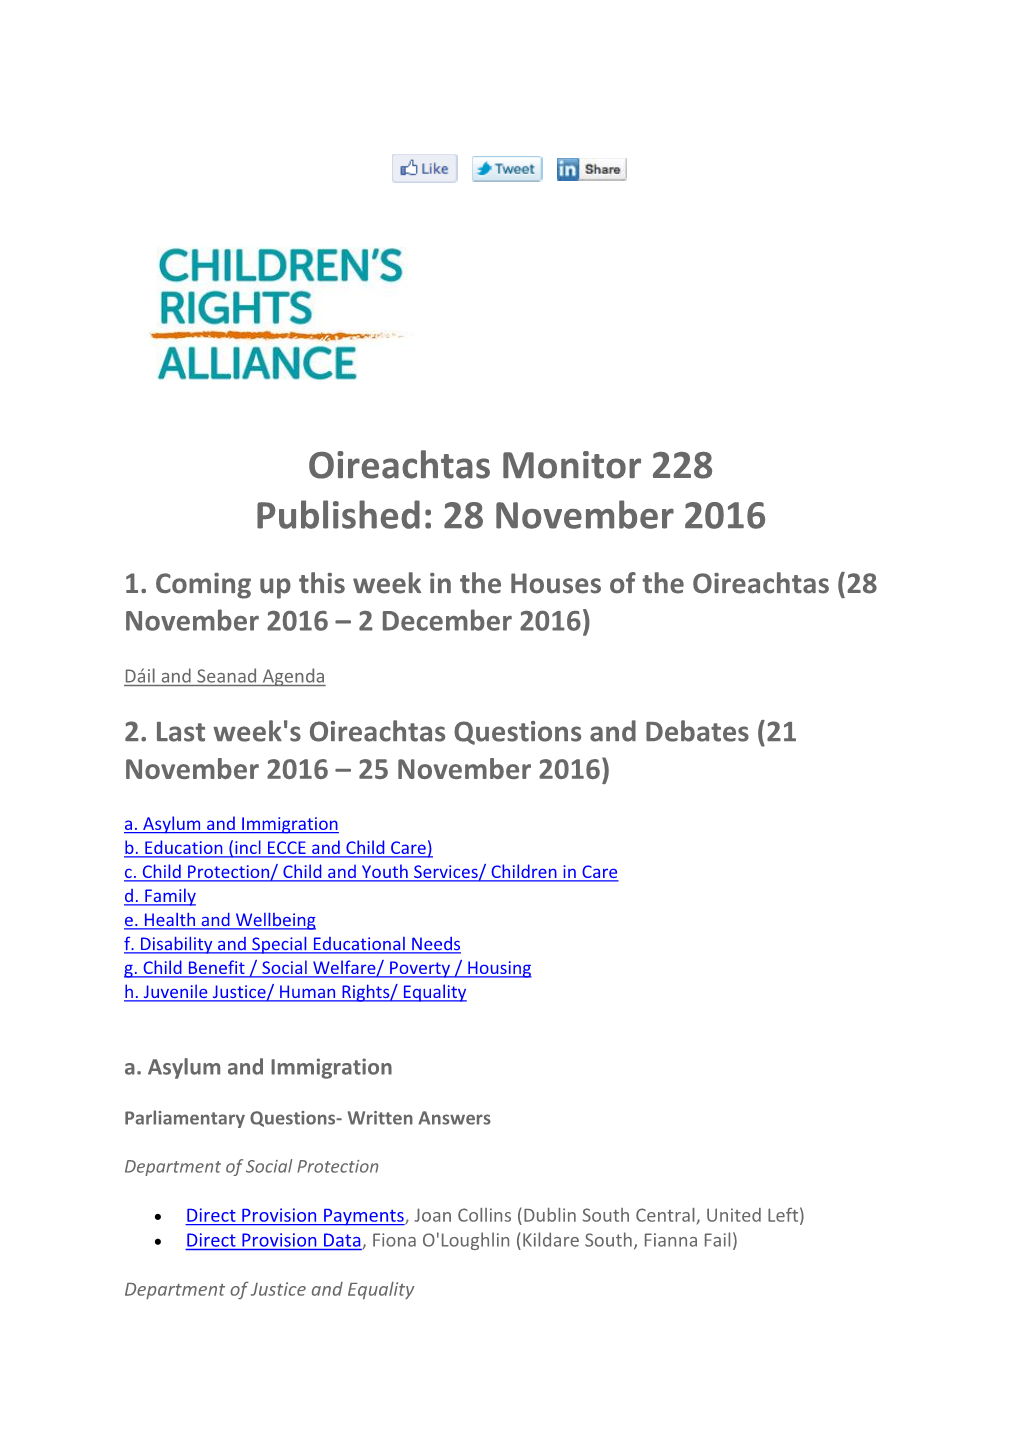 Oireachtas Monitor 226 21 November 2016